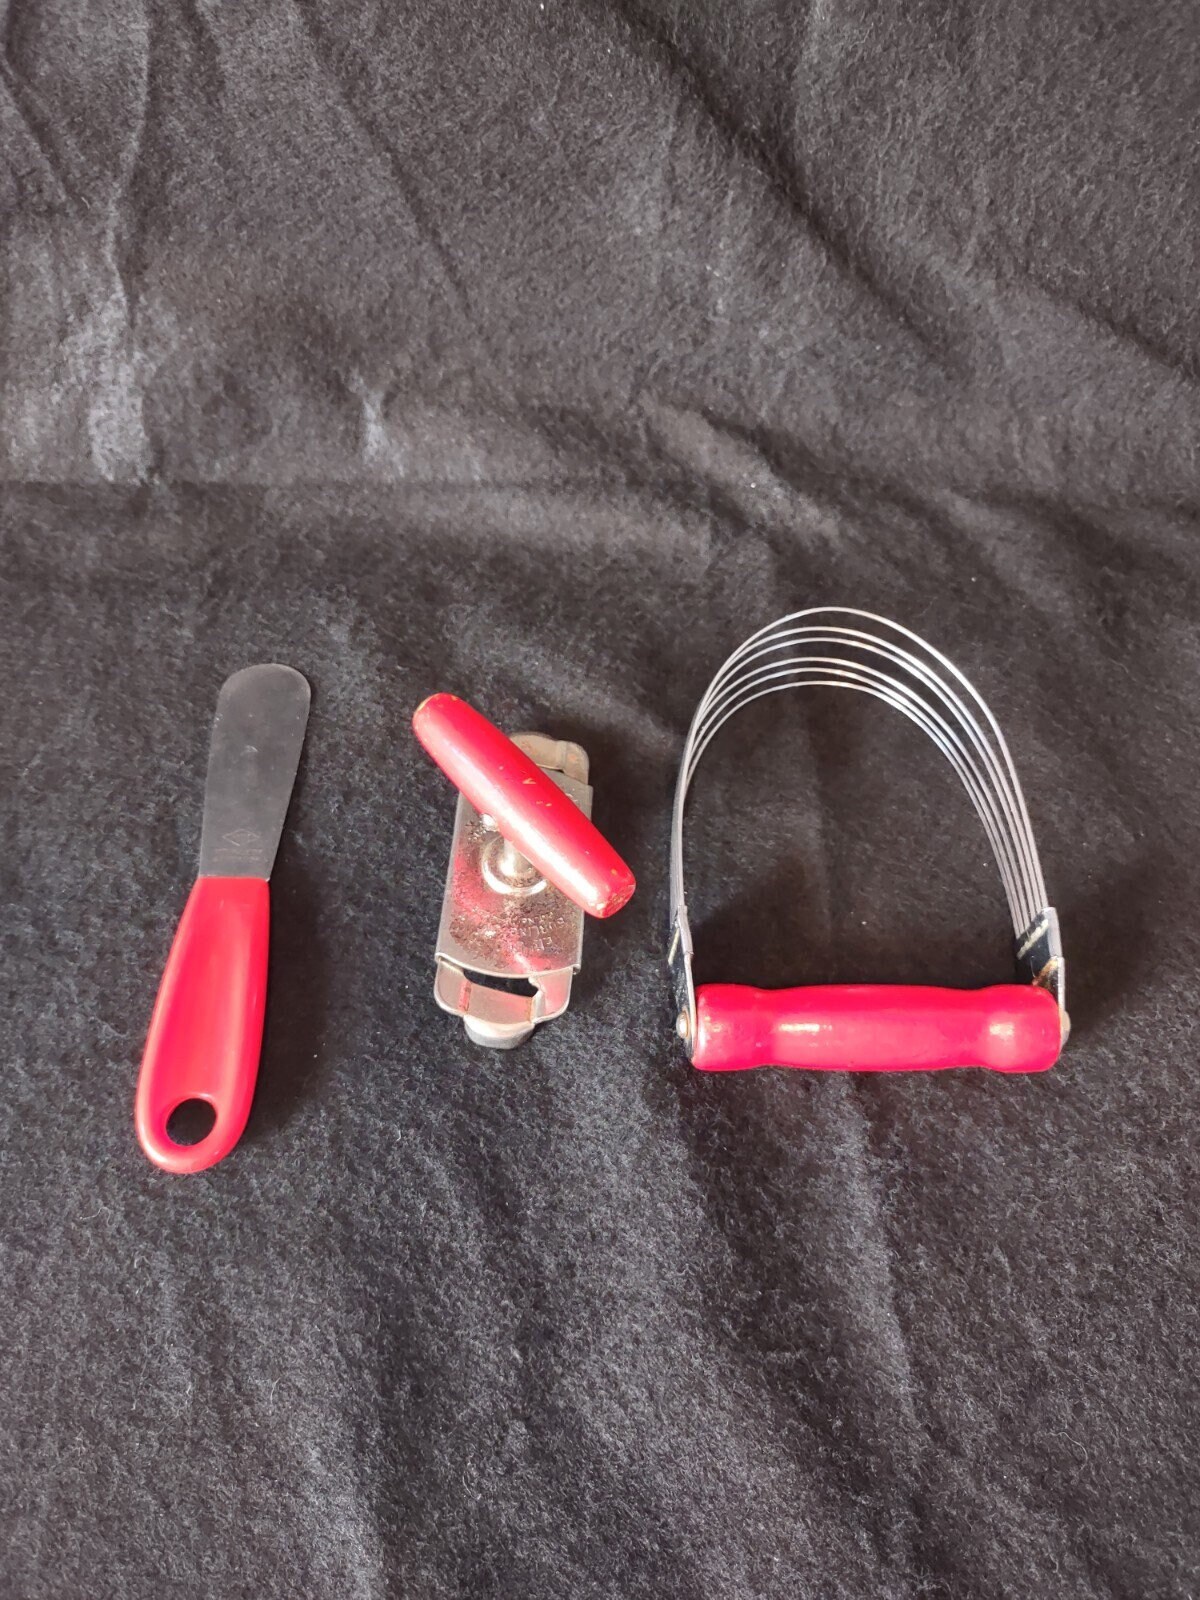 Vintage Swing-Away Lid Jar Opener Red Handle Kitchen Gadget Tool Utensil